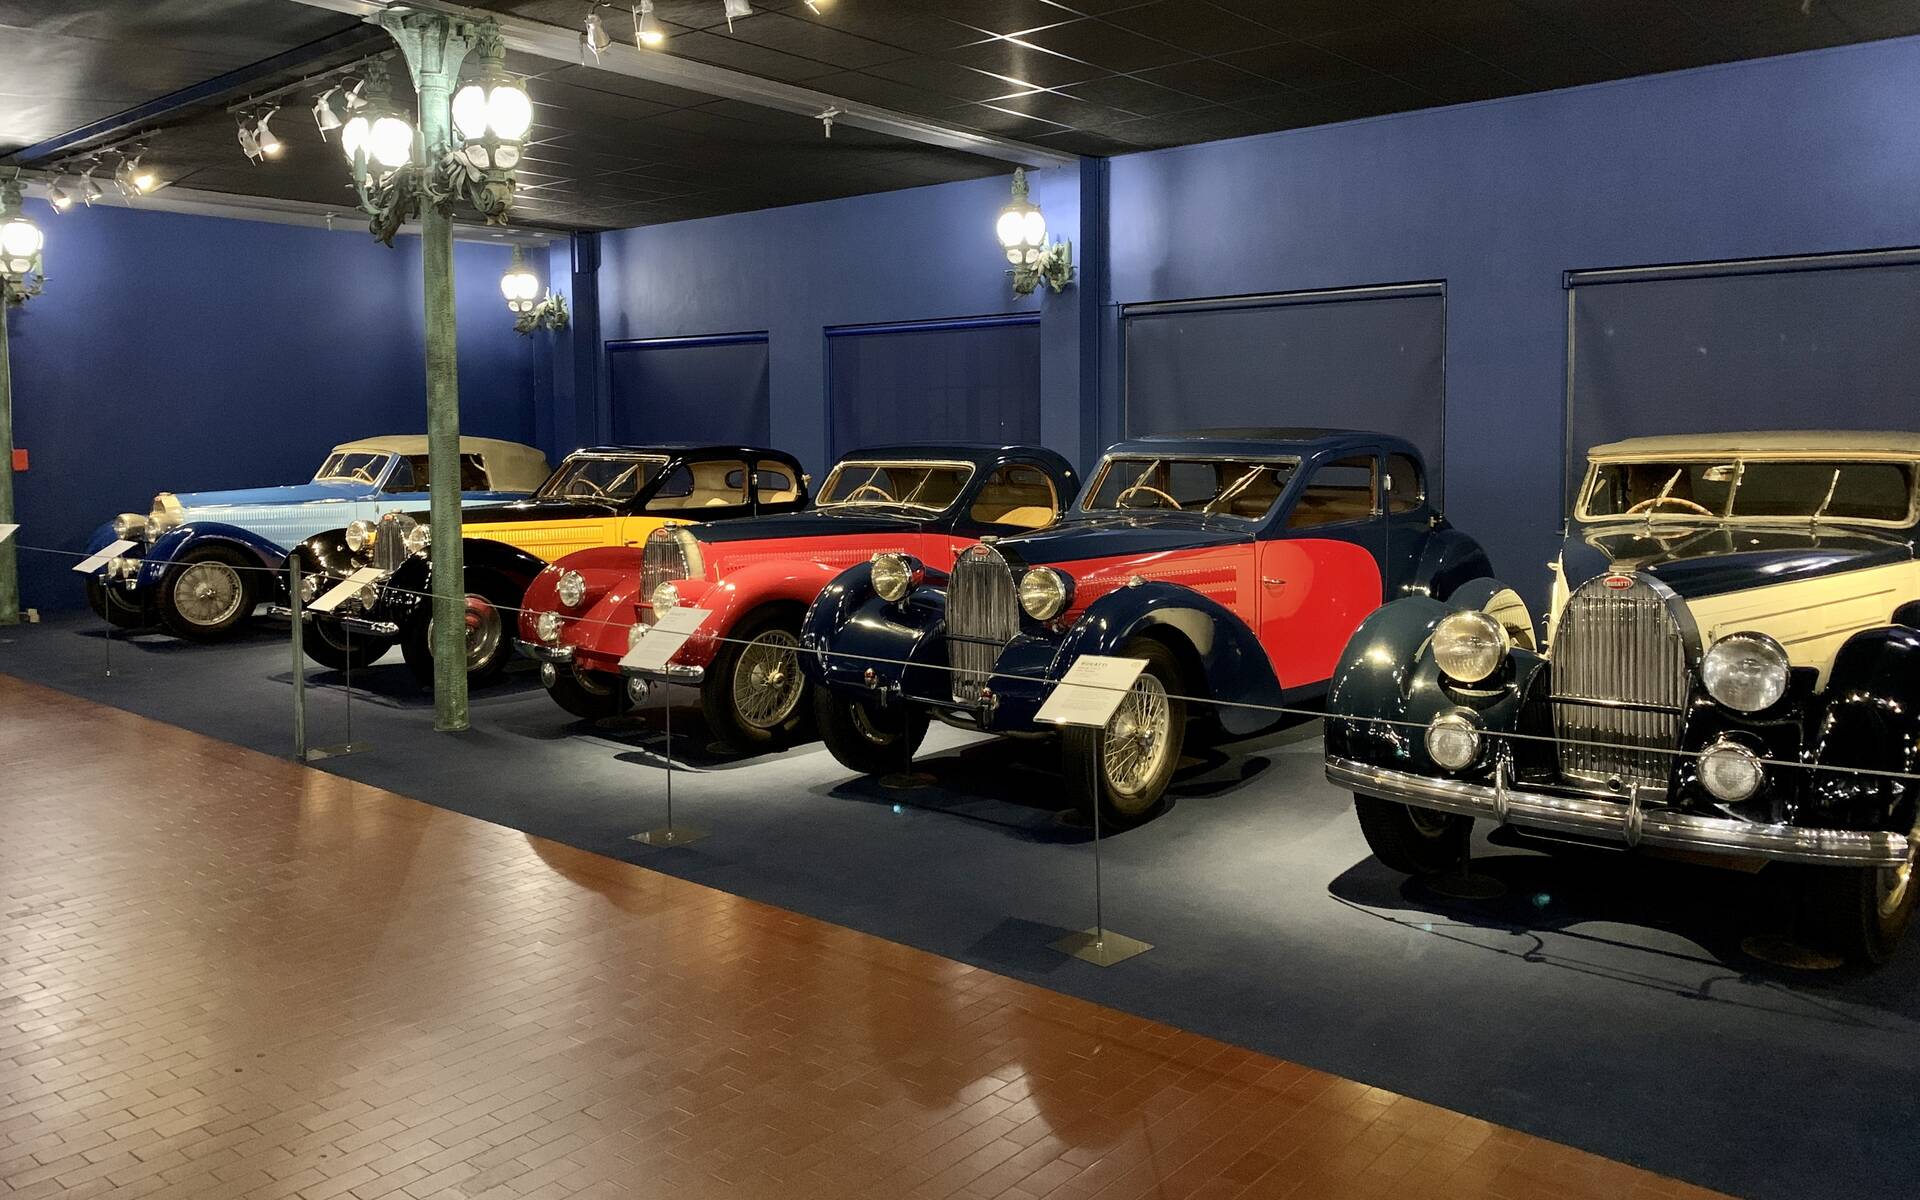 En photos : une centaine de Bugatti réunies dans un même musée 503107-en-photos-des-dizaines-de-bugatti-reunies-dans-un-meme-musee